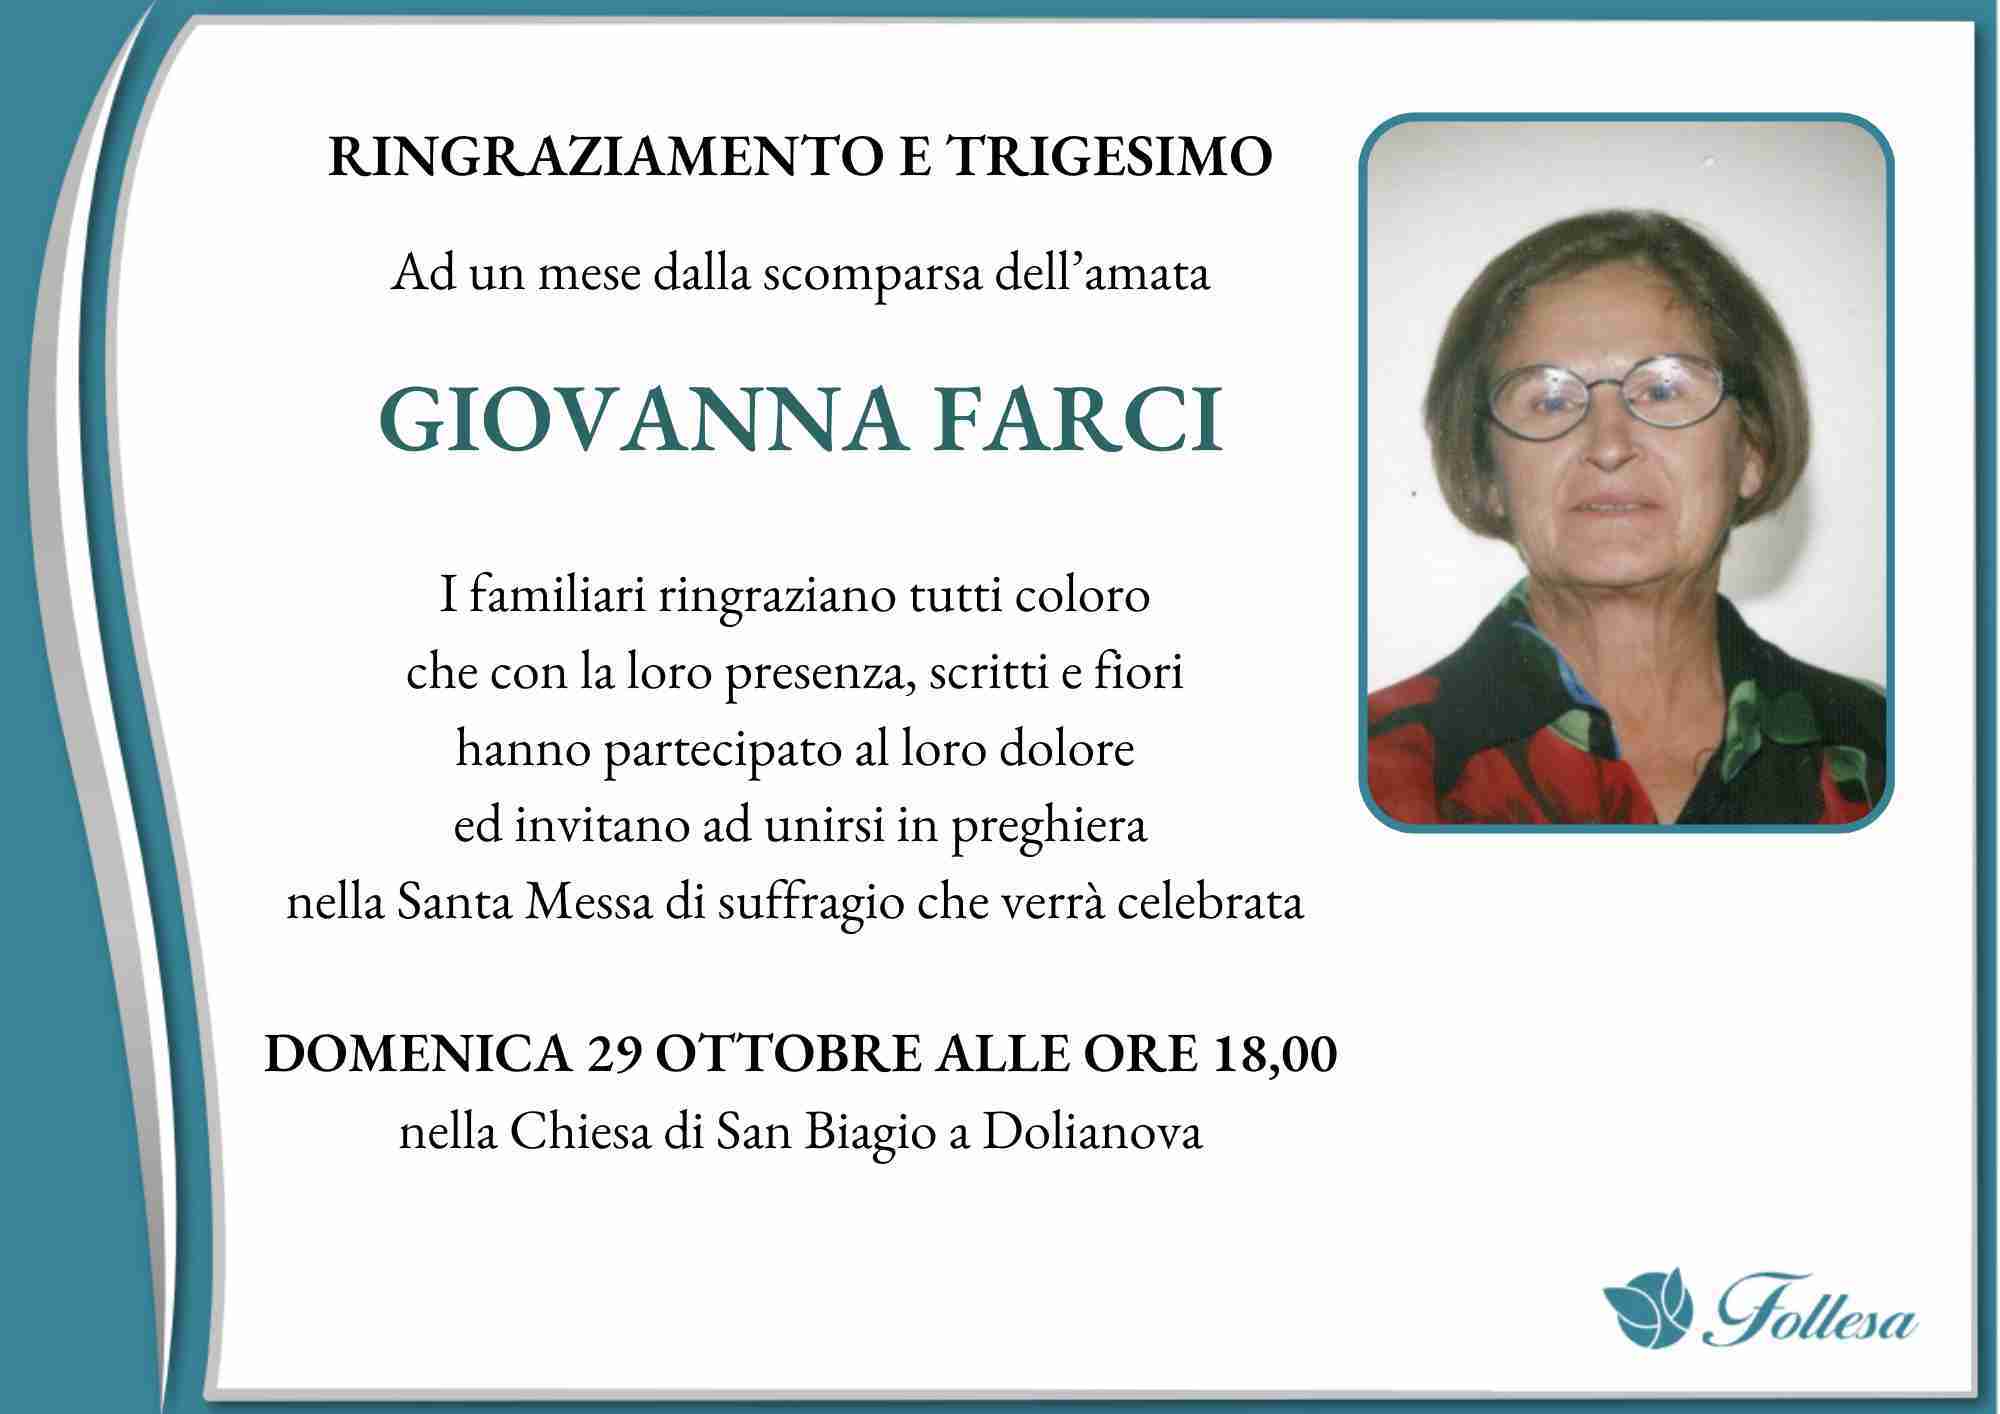 Giovanna Farci